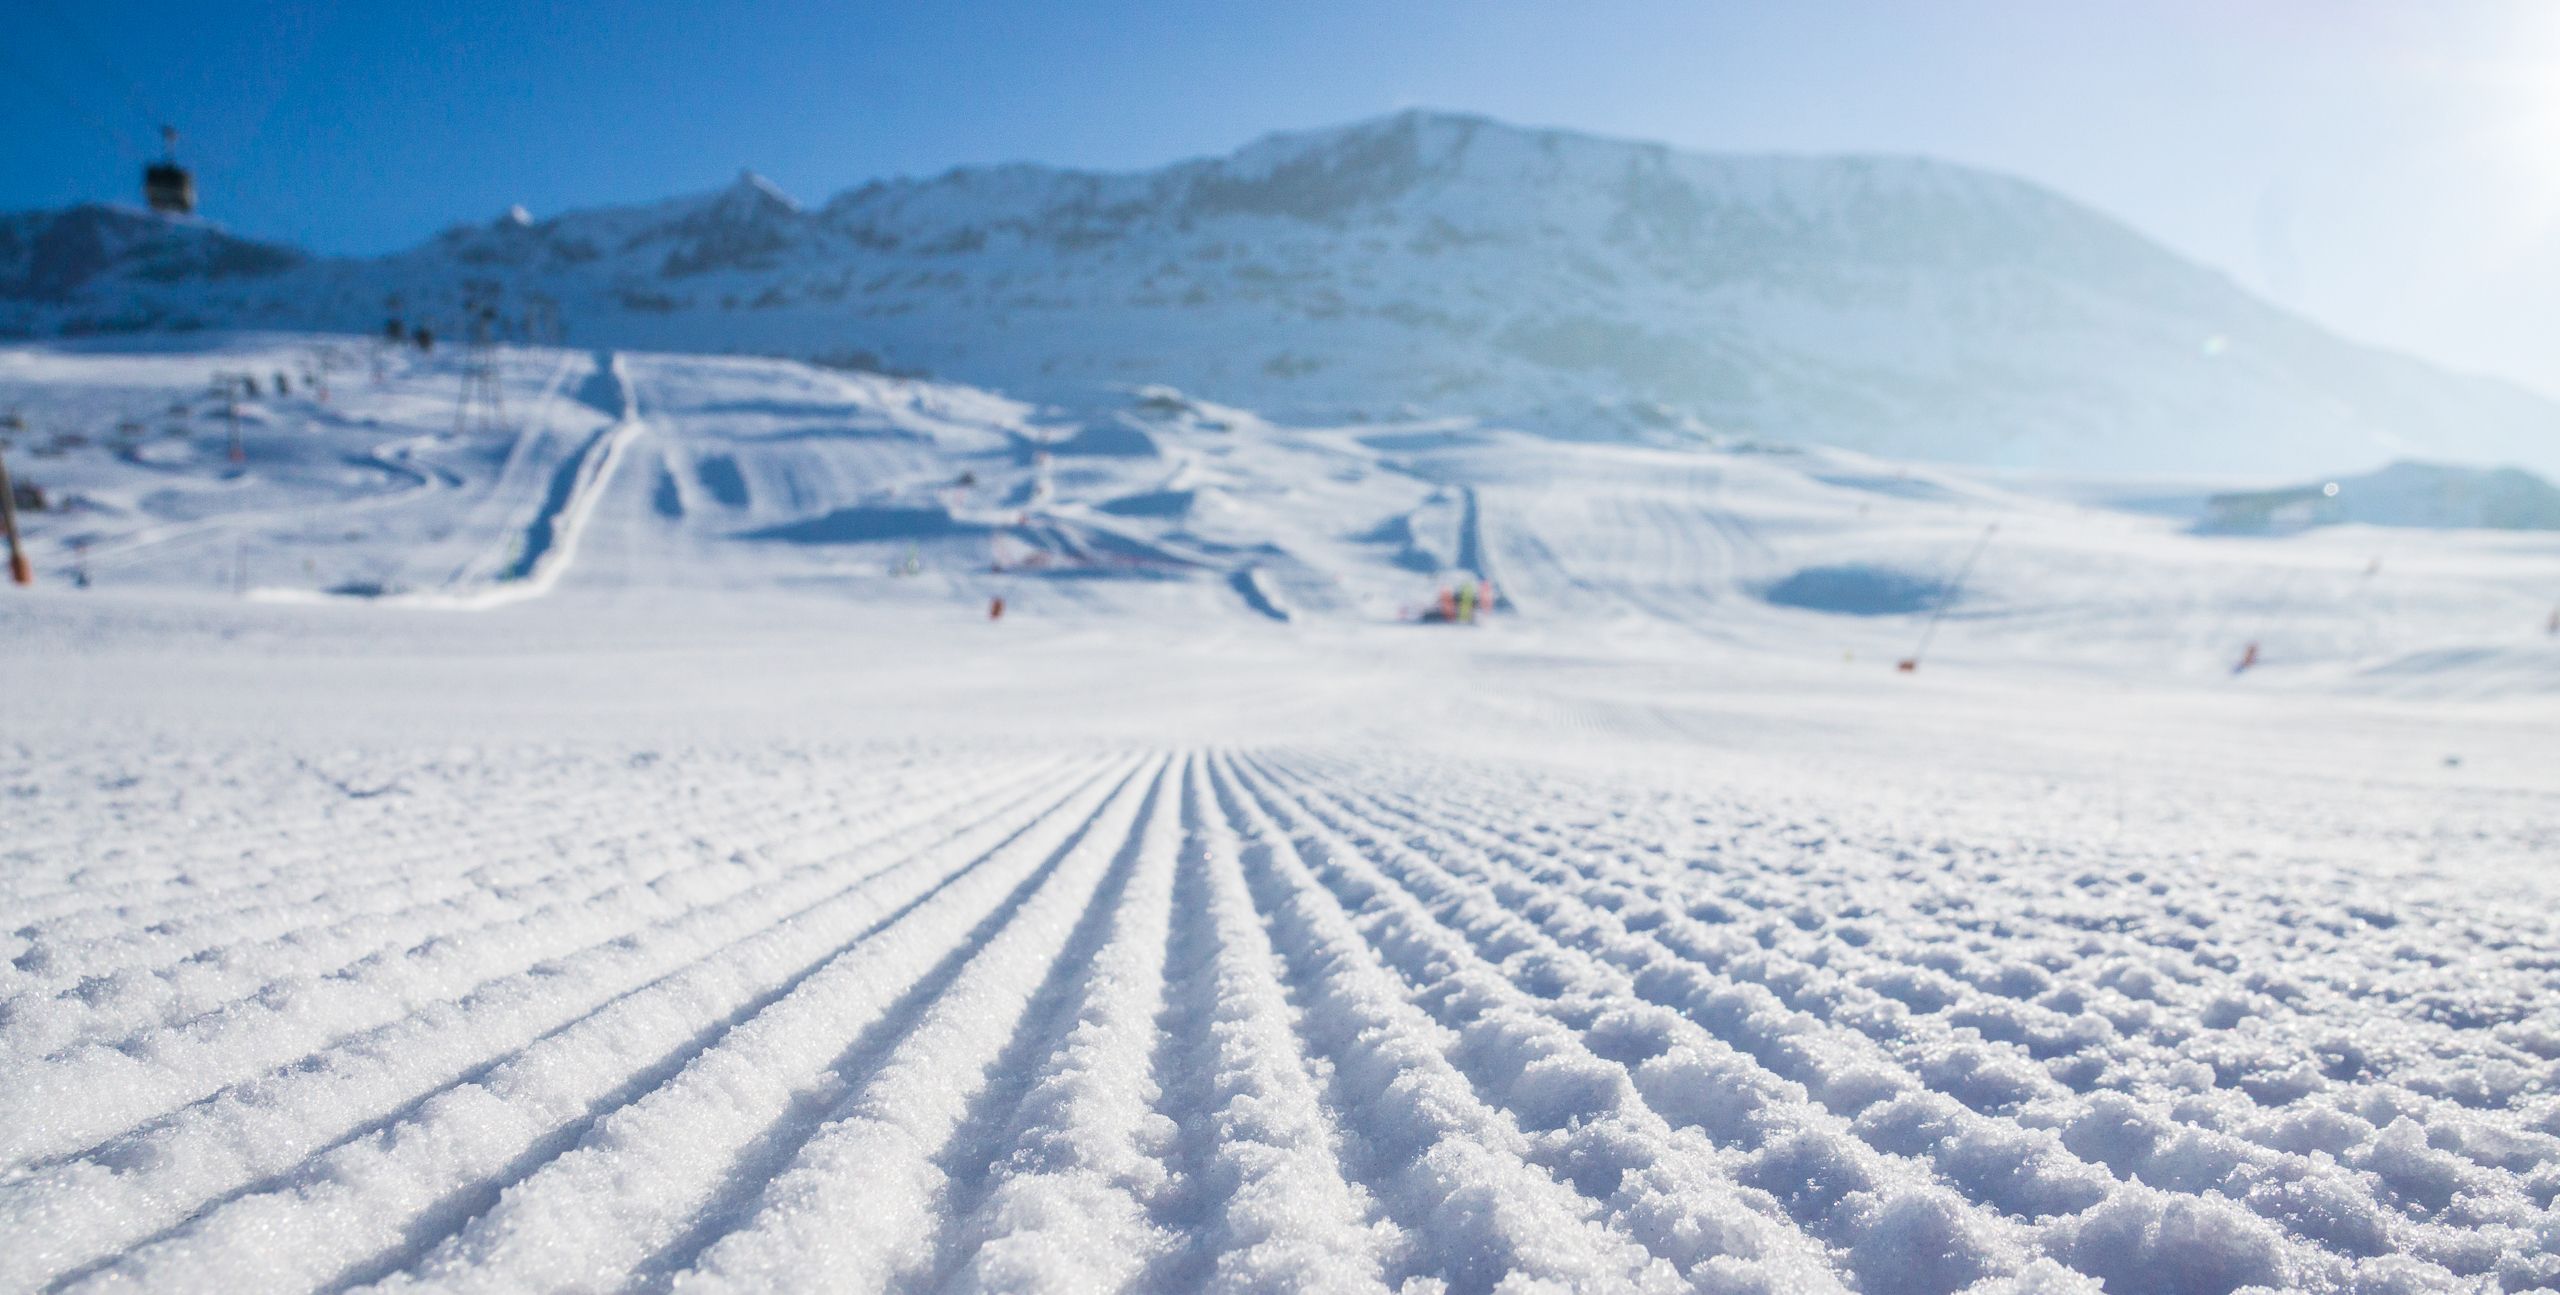 Stakingen in de Franse skigebieden op 15 februari?